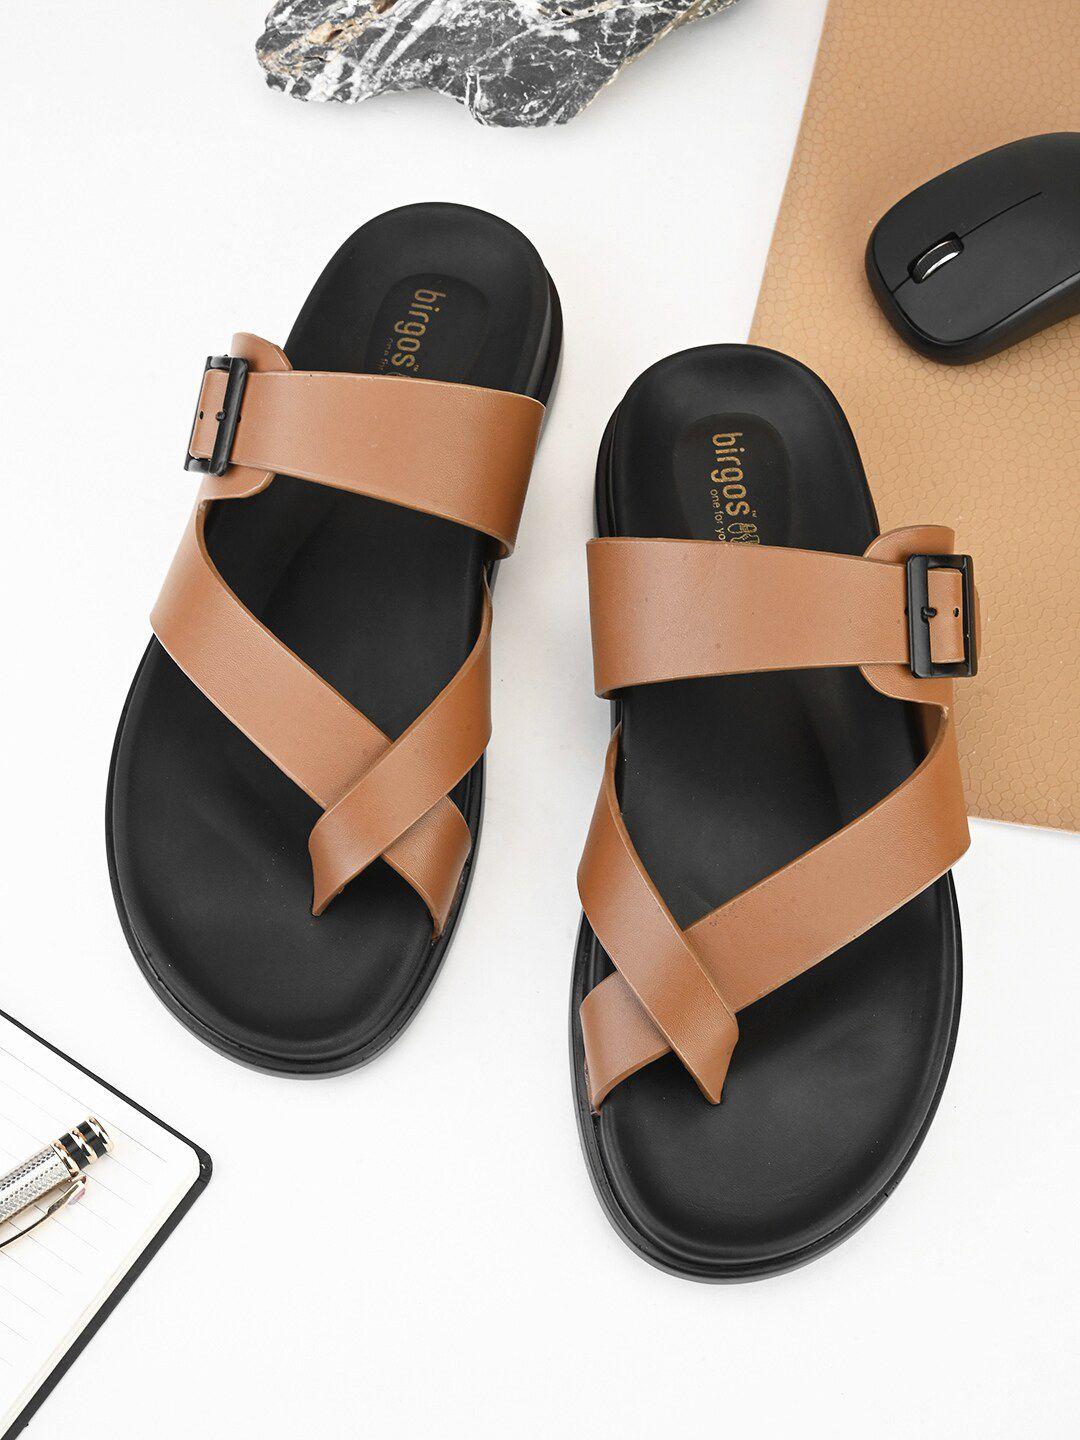 birgos men one toe comfort sandals with buckle detail